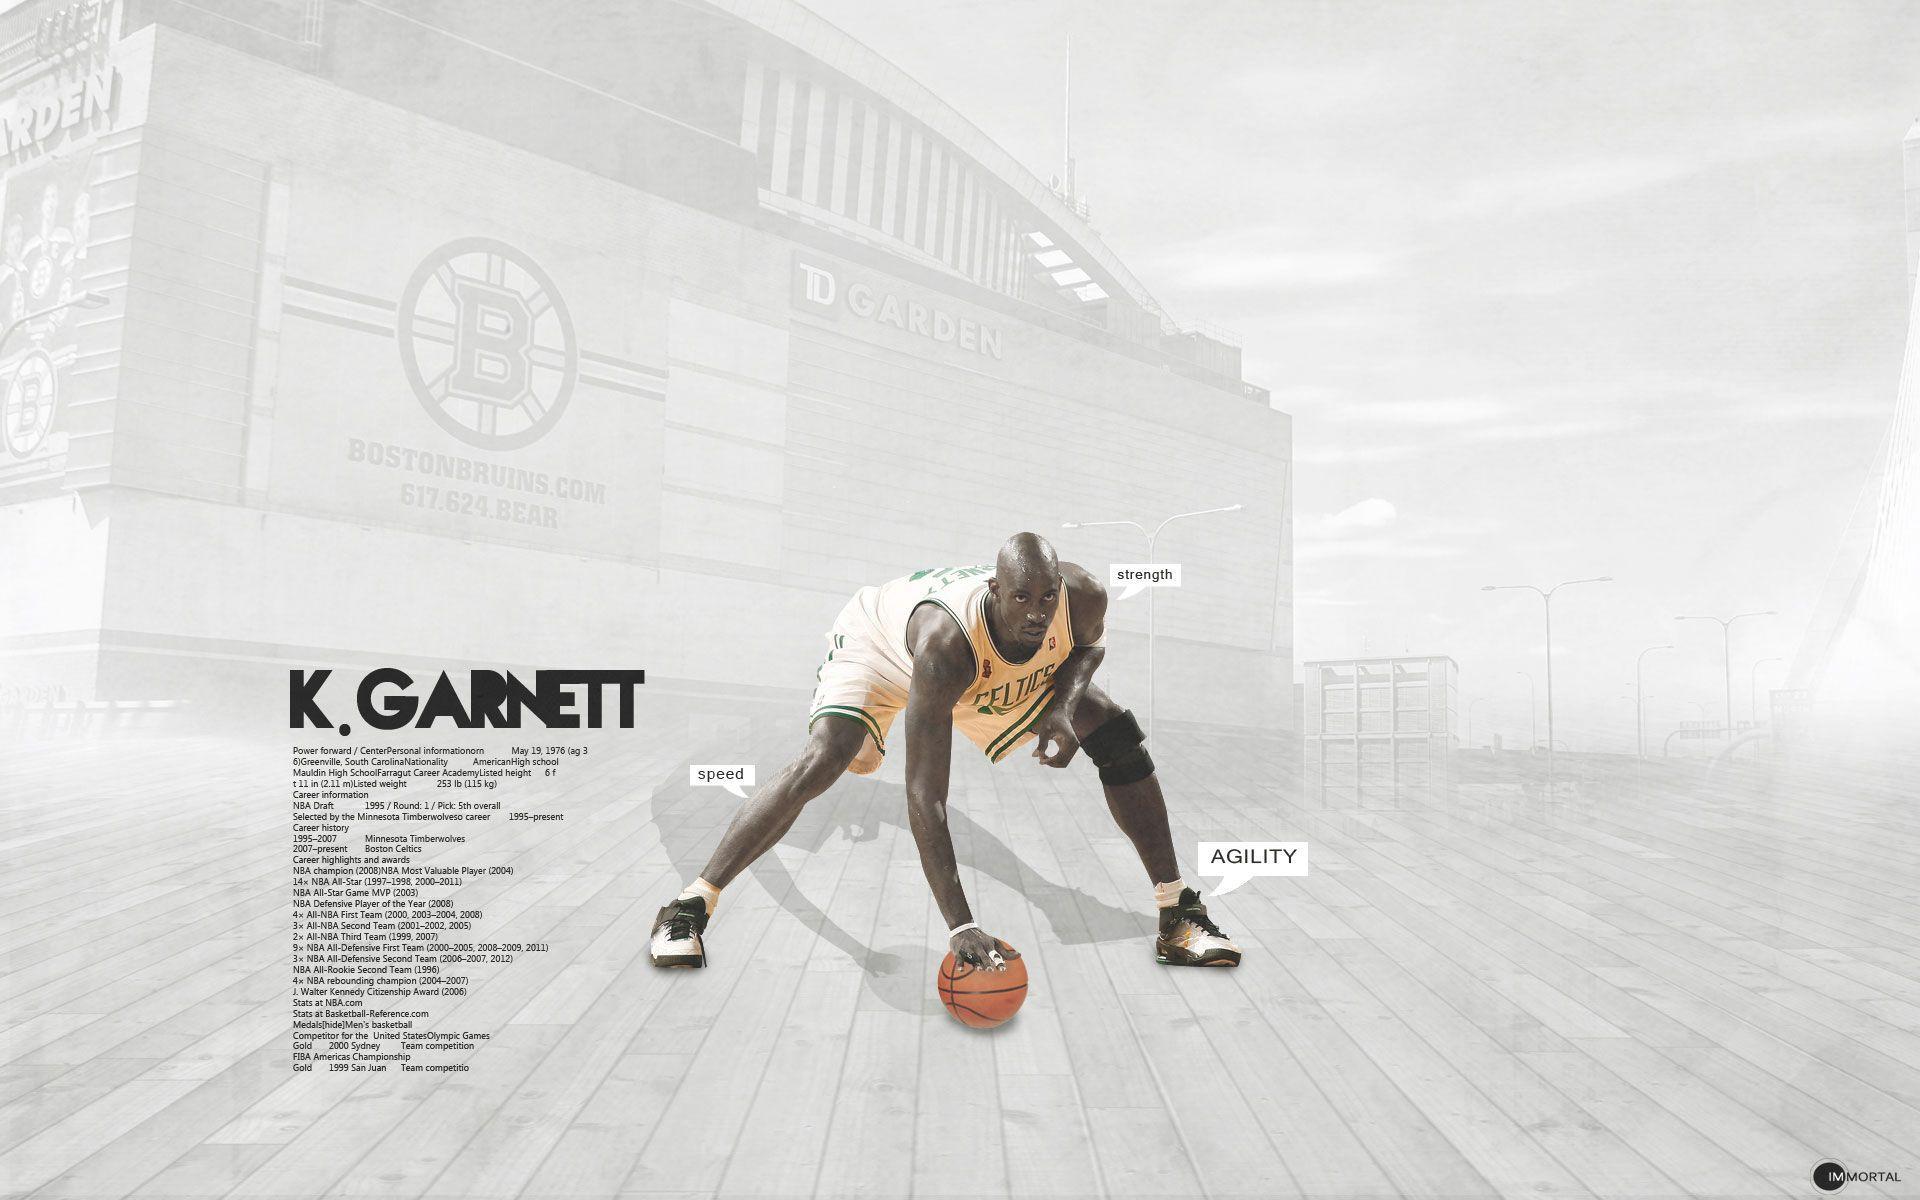 Kevin Garnett Wallpaper. Basketball Wallpaper at